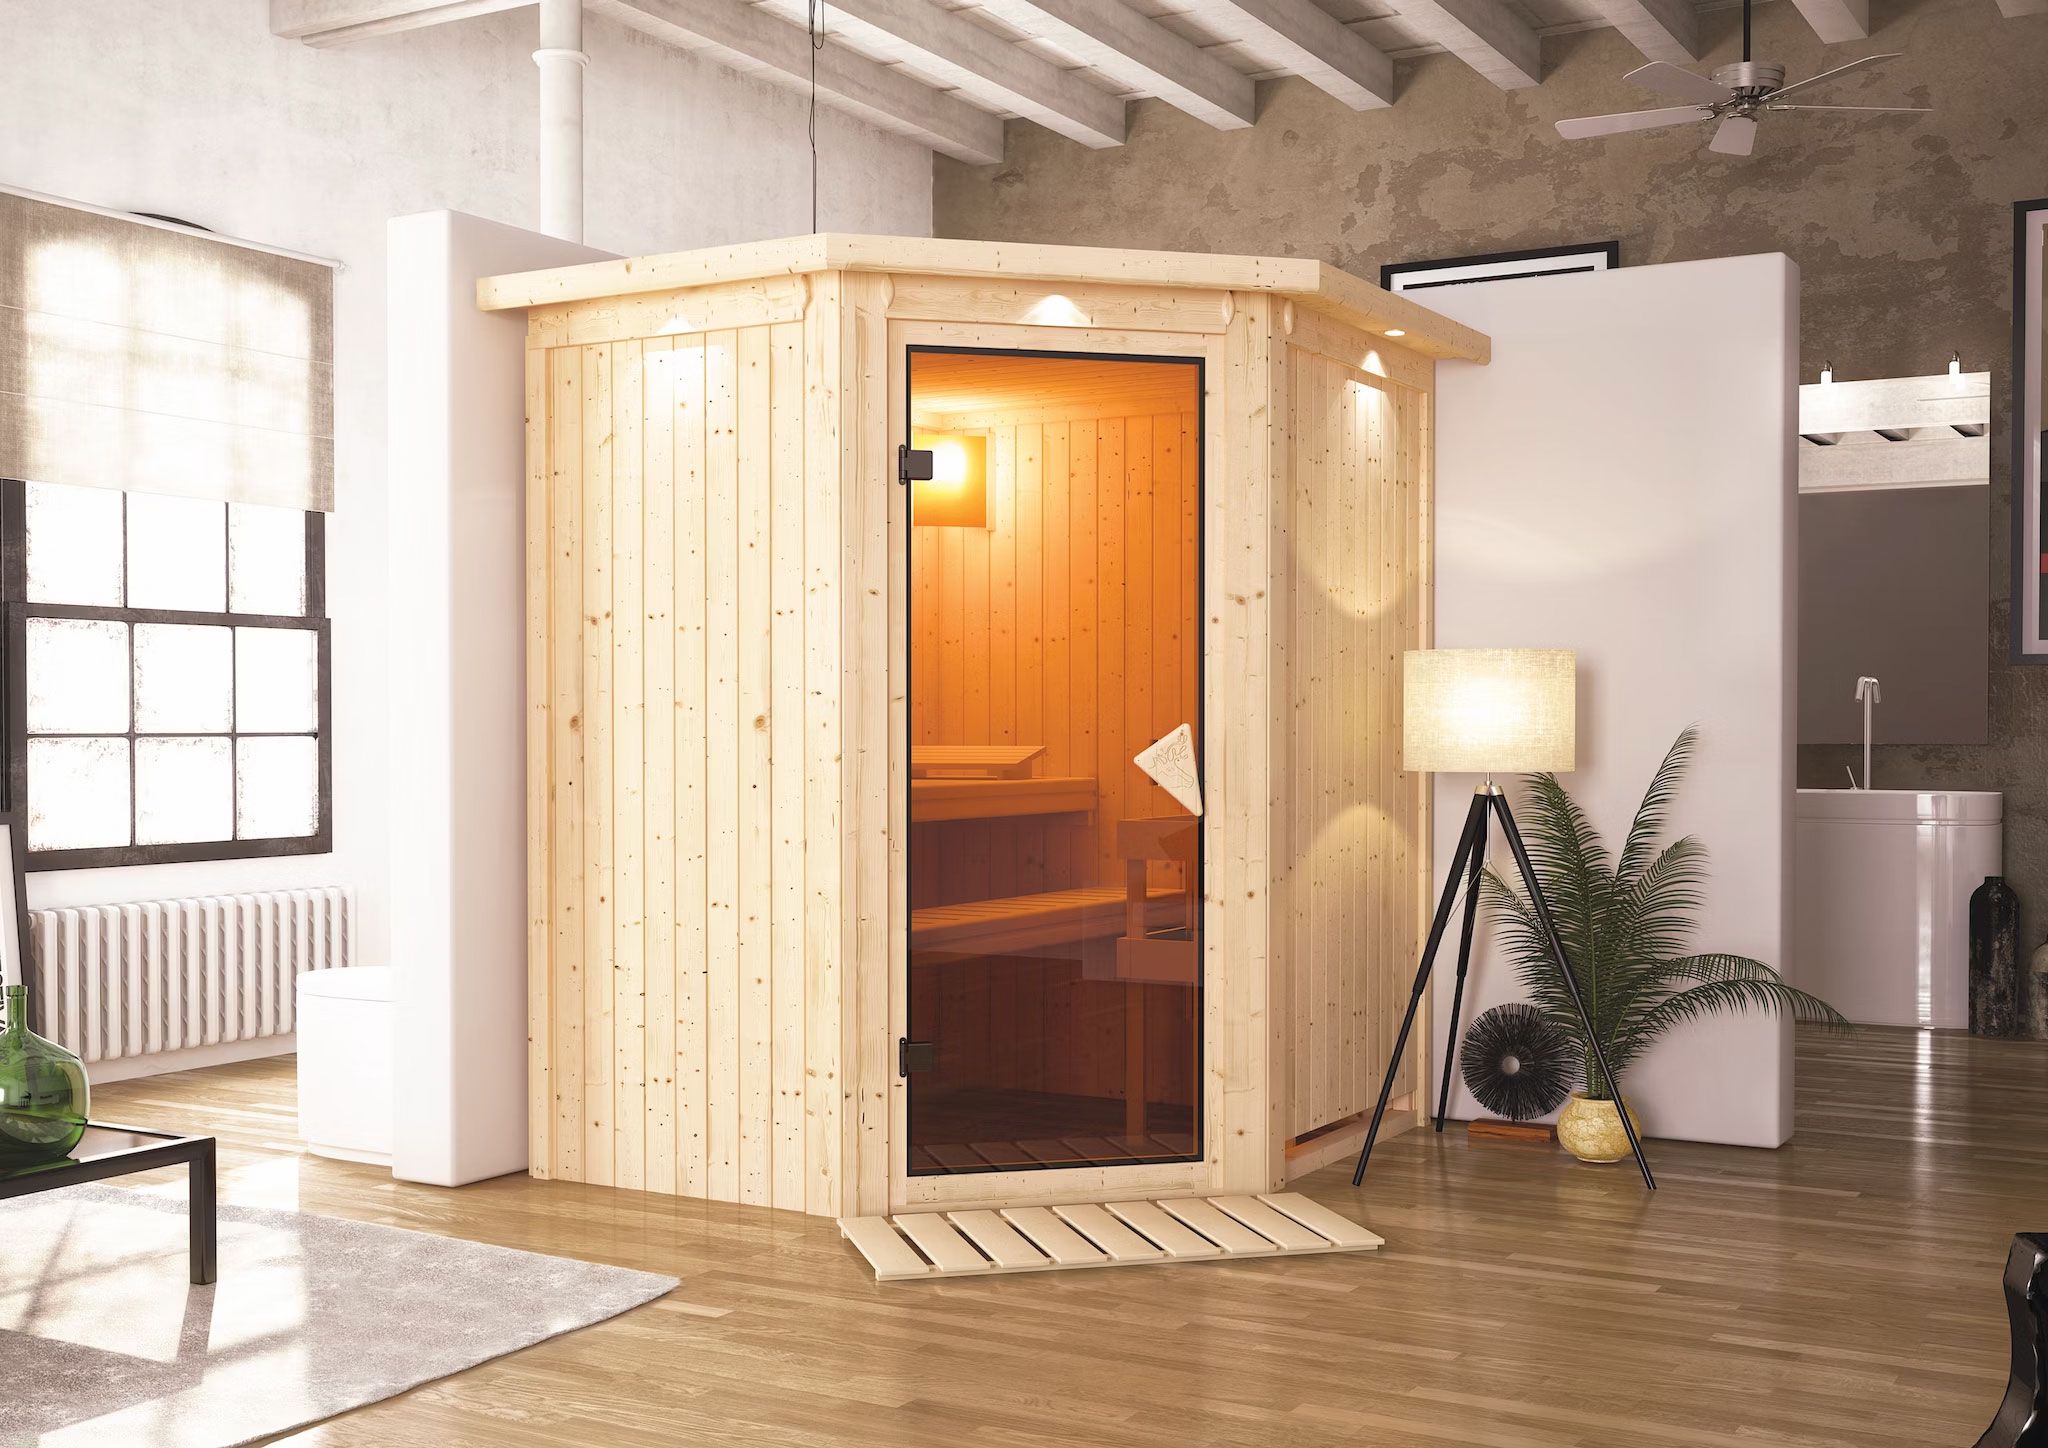 Sauna "Kjell" SET mit bronzierter Tür - Farbe: Natur, Ofen externe Steuerung easy 3,6 kW - 170 x 151 x 198 cm (B x T x H)